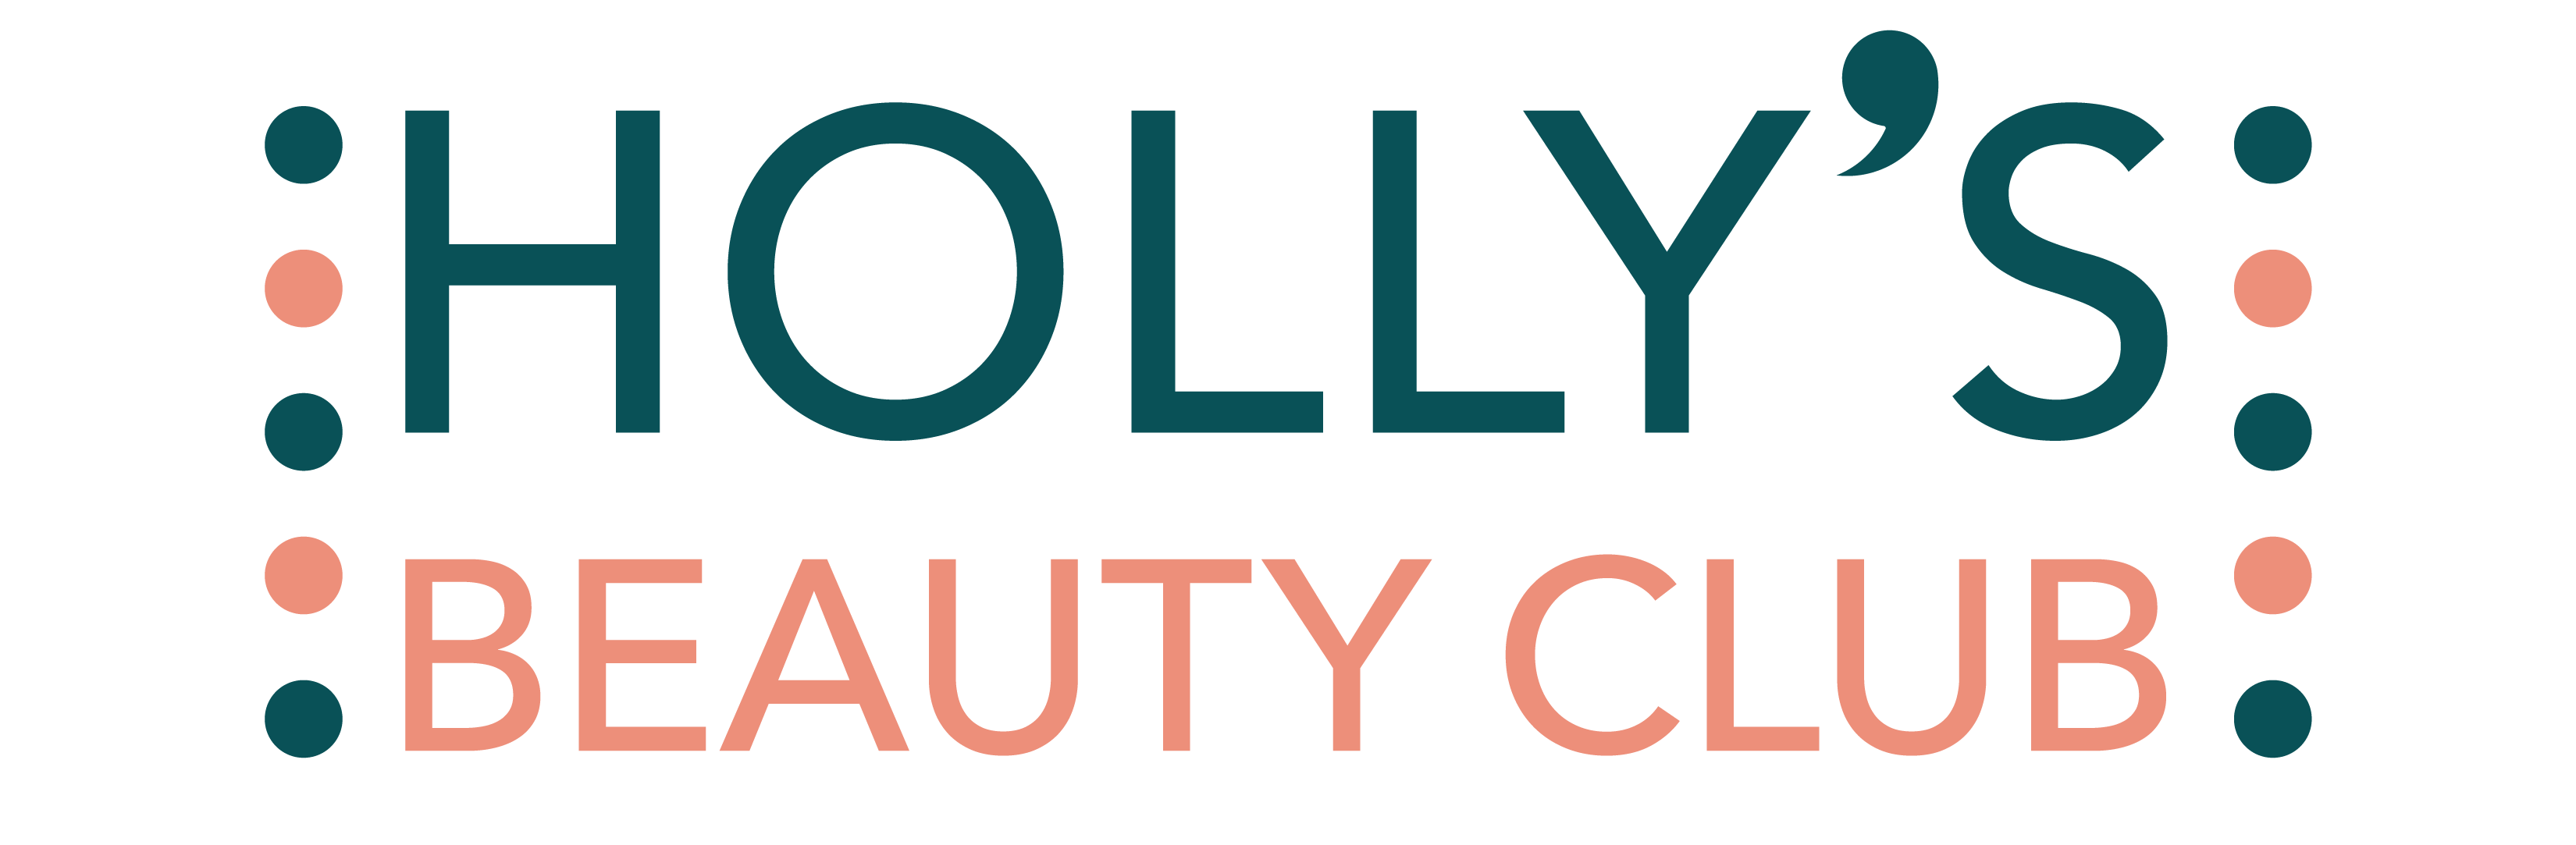 HOLLY'S BEAUTY CLUB